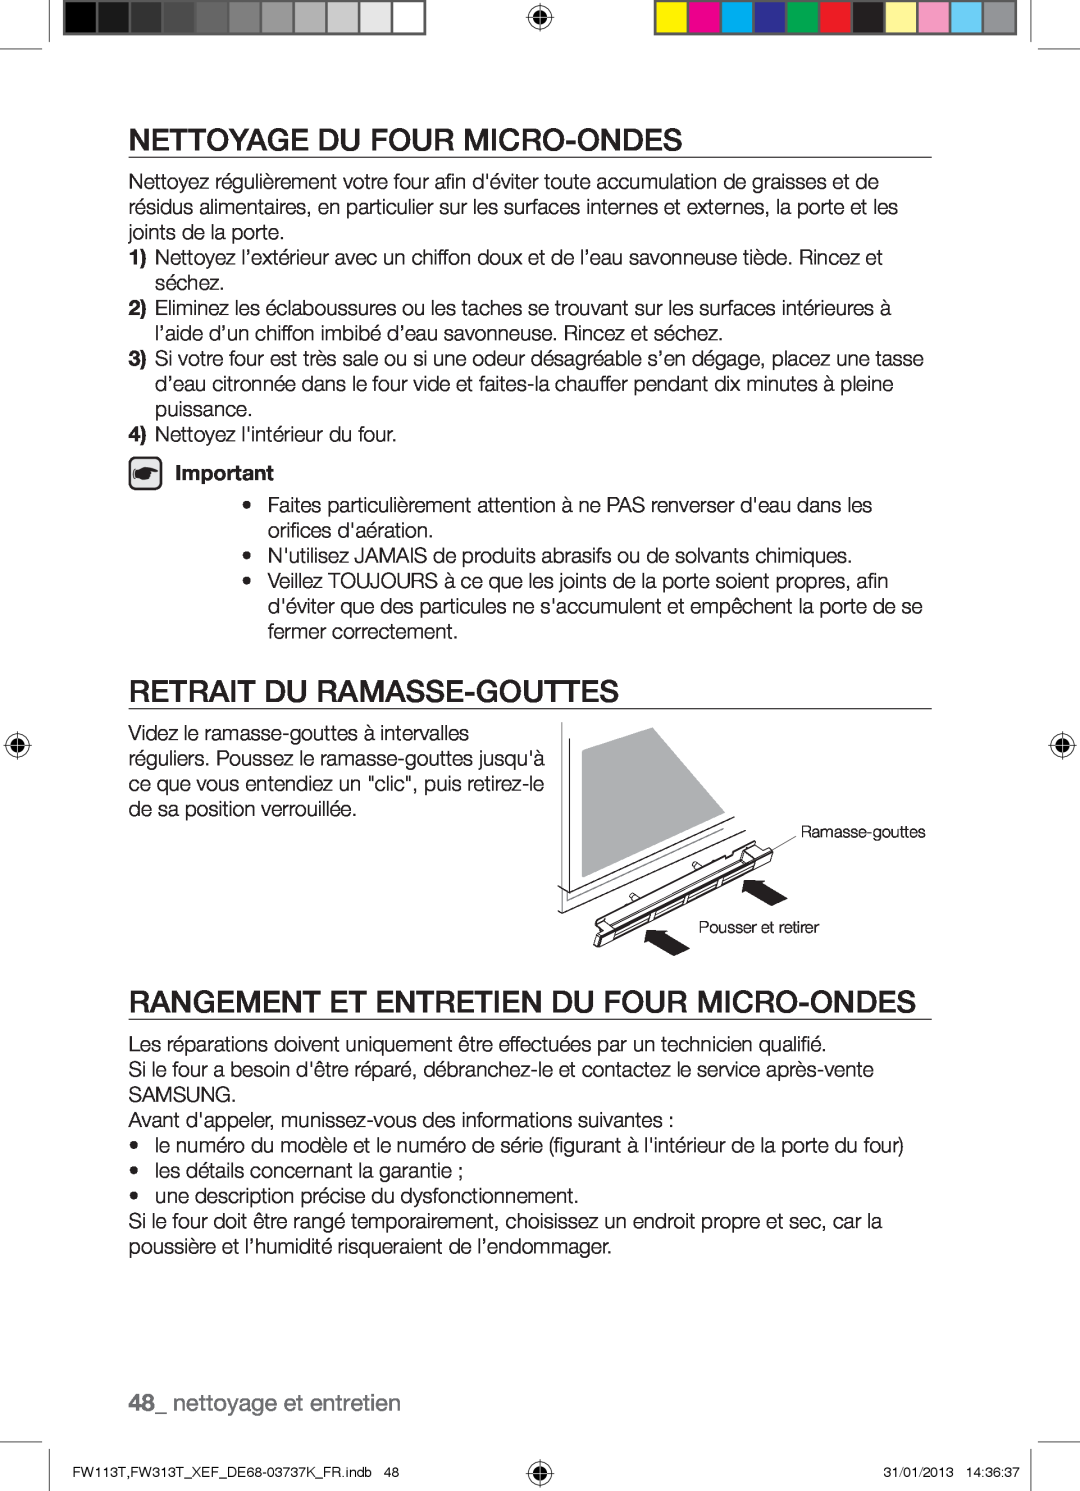 Samsung FW113T002/XEF manual Nettoyage Du Four Micro-Ondes, Retrait Du Ramasse-Gouttes, nettoyage et entretien 